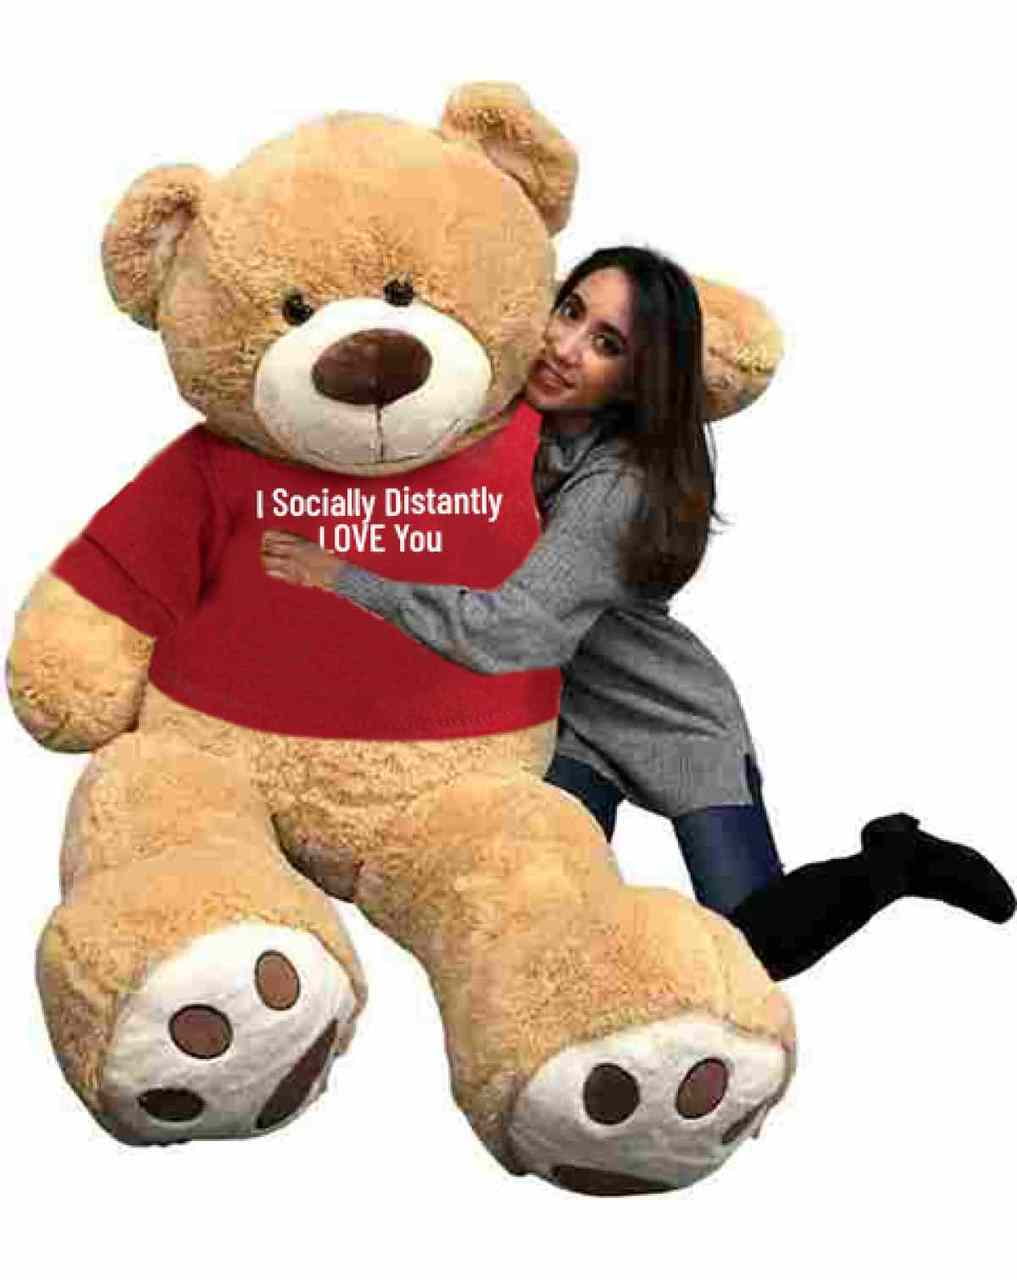 6 foot tall teddy bear walmart